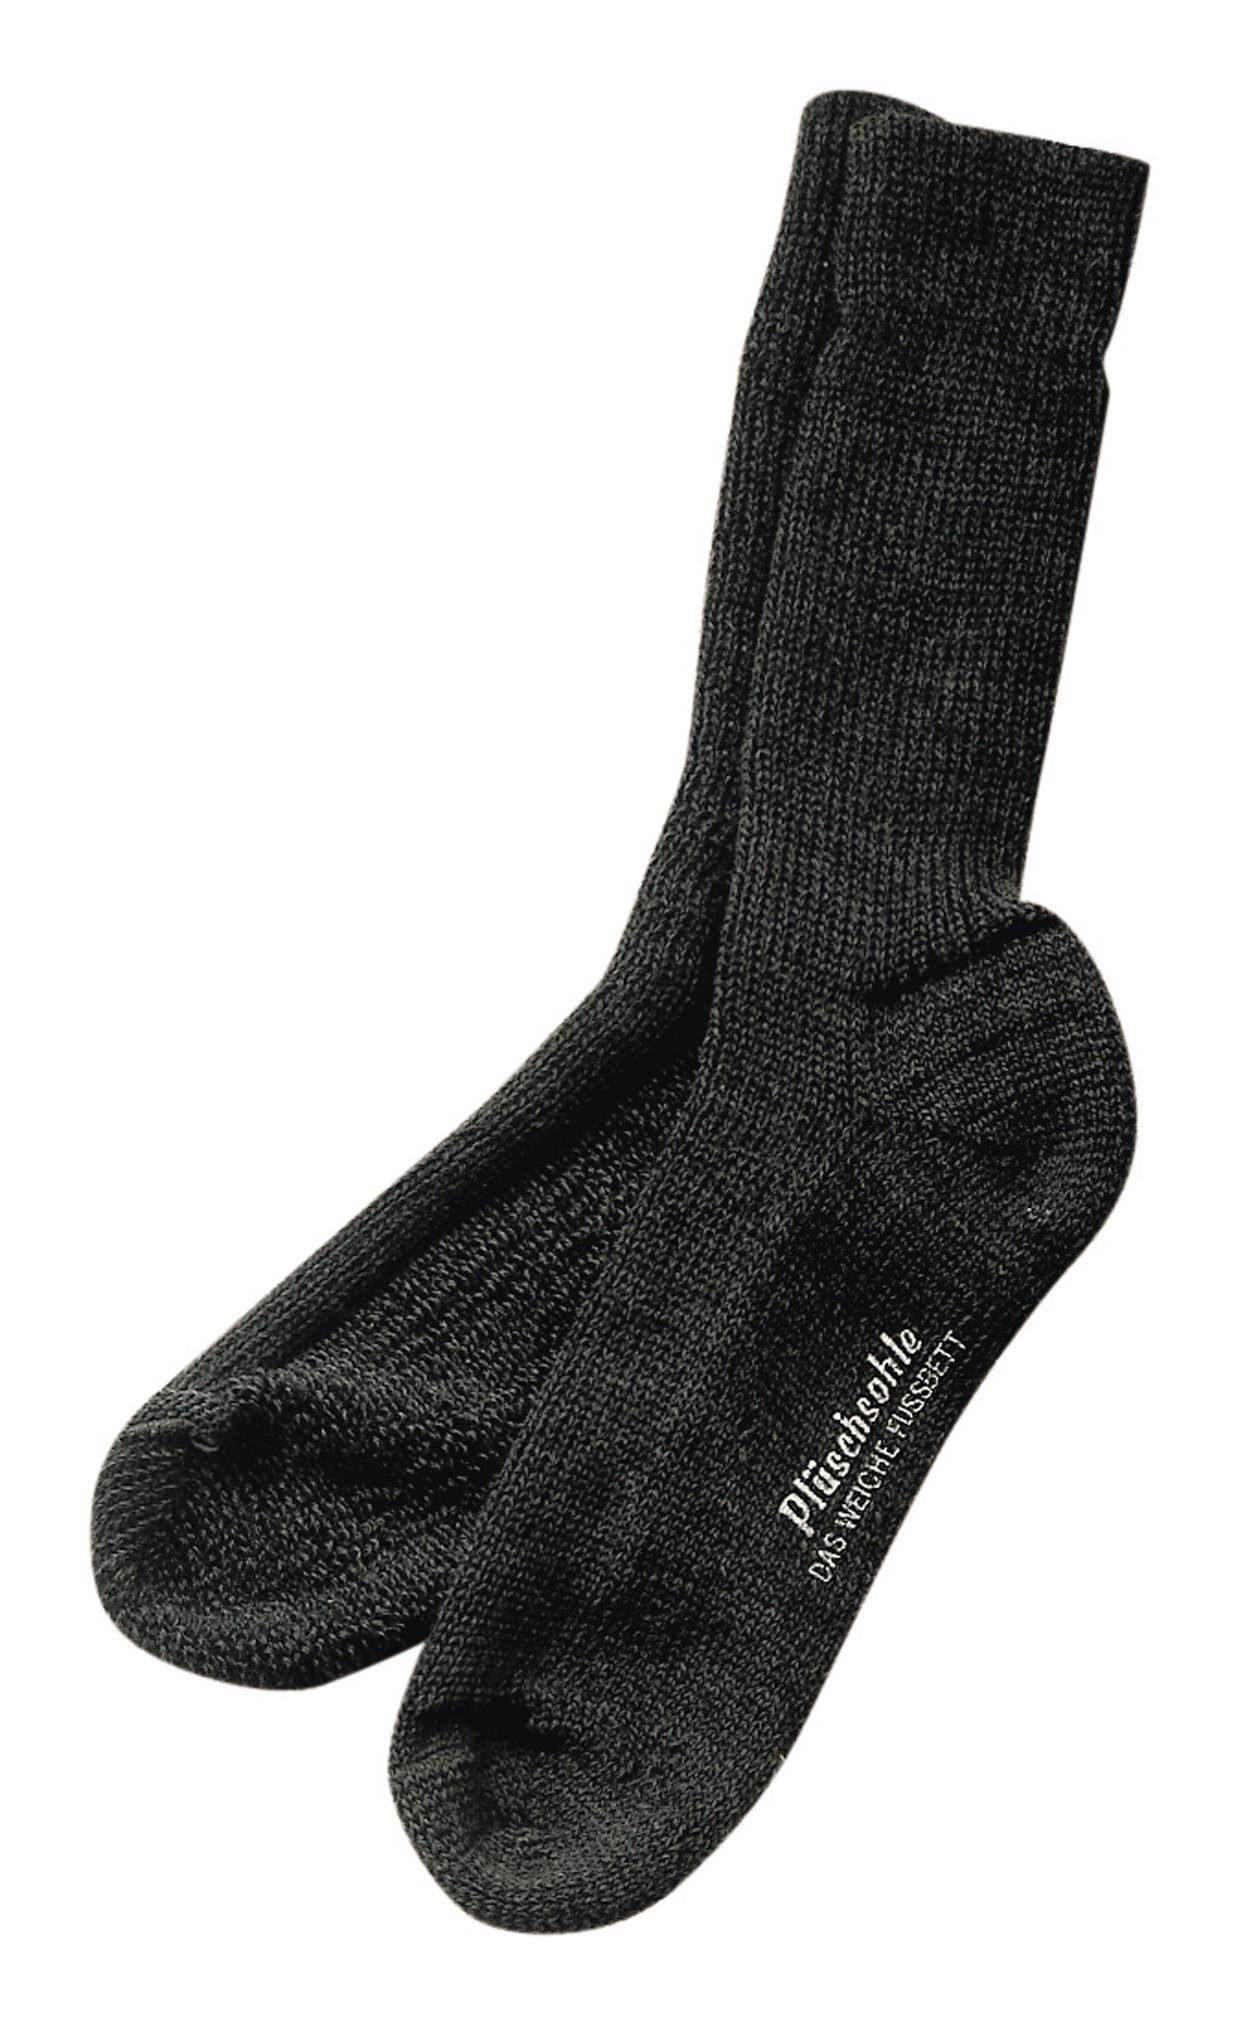 fortis Socken Gesundheitssocke Größe 45 - 46 anthrazit